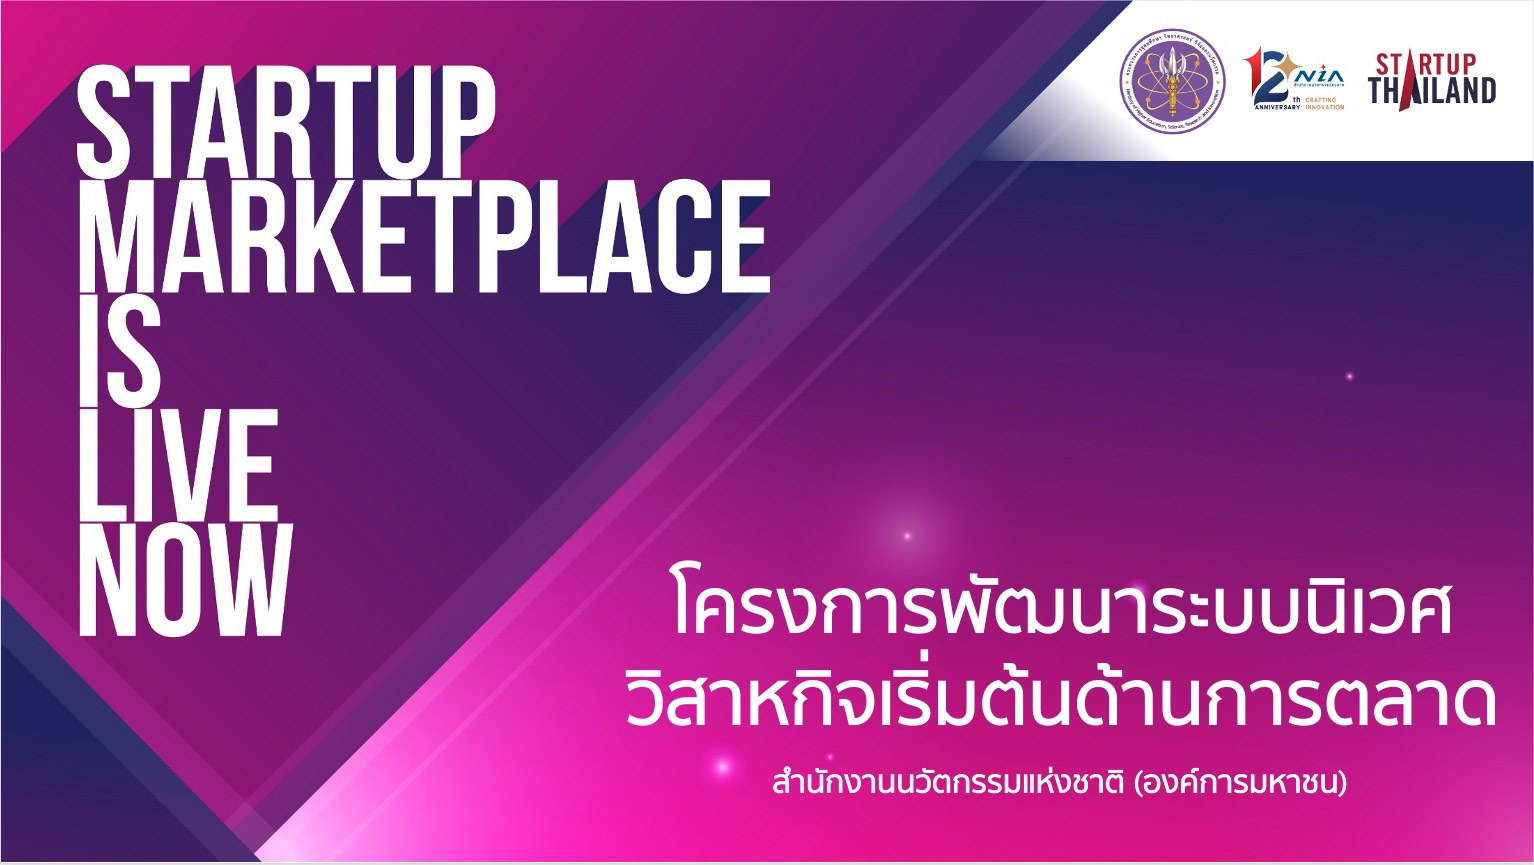 ปั้นธุรกิจรับเทรนด์อนาคต อัพ 50 ไอเดีย ลง Startup Thailand Youtube